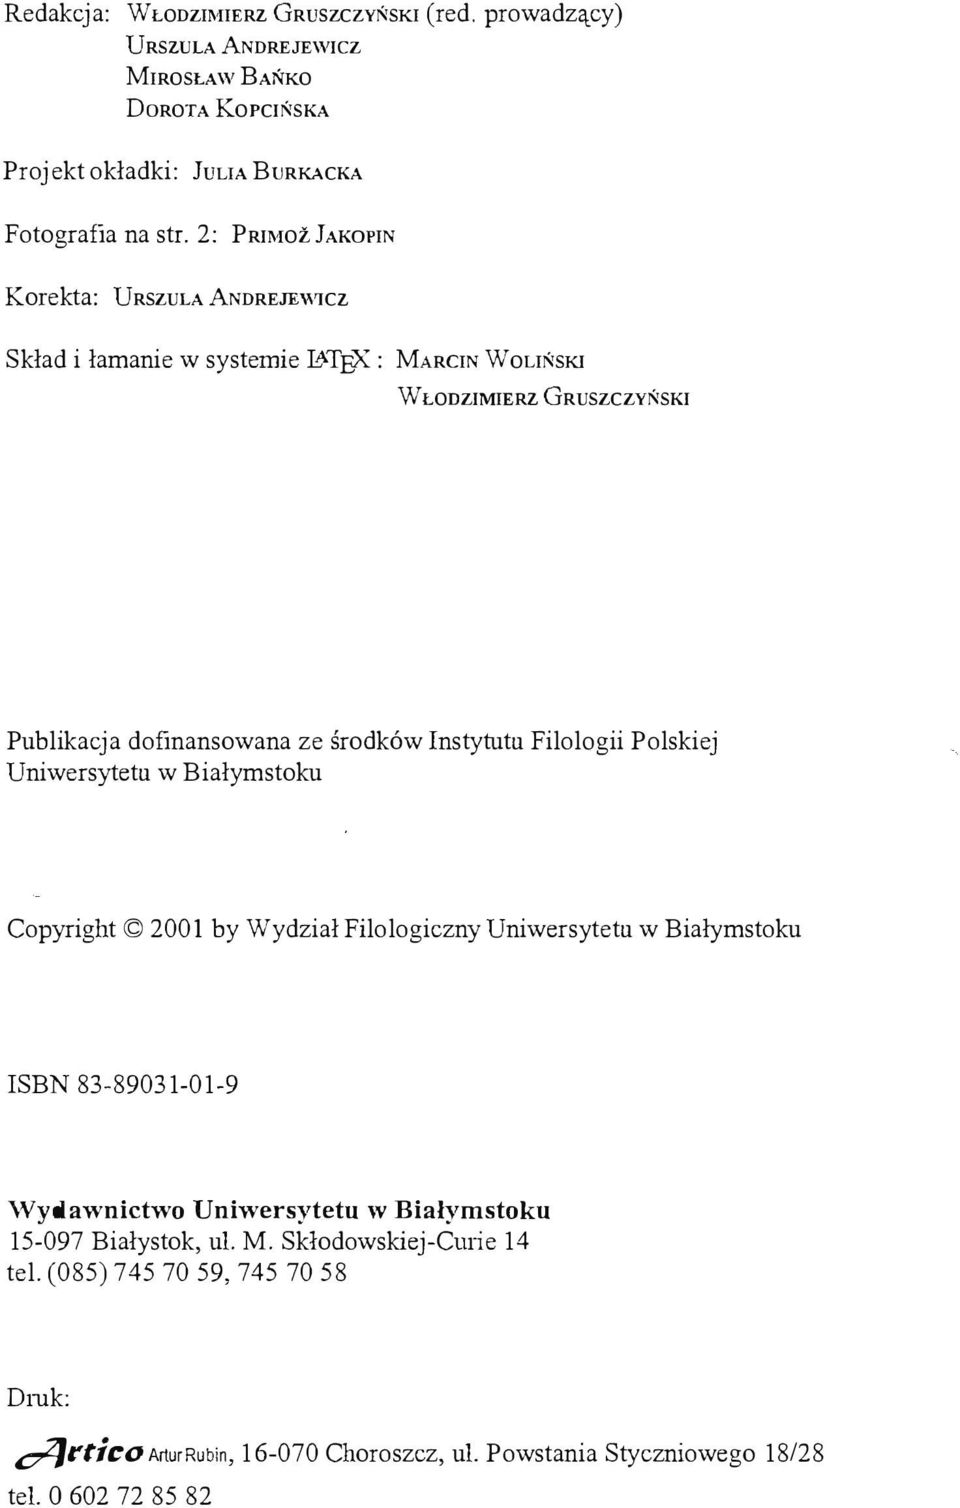 Instytutu Filologii Polskiej Uniwersytetu w Białymstoku Copyright 2001 by Wydział Filologiczny Uniwersytetu w Białymstoku ISBN 83-89031-01-9 Wydawnictwo Uniwersytetu w